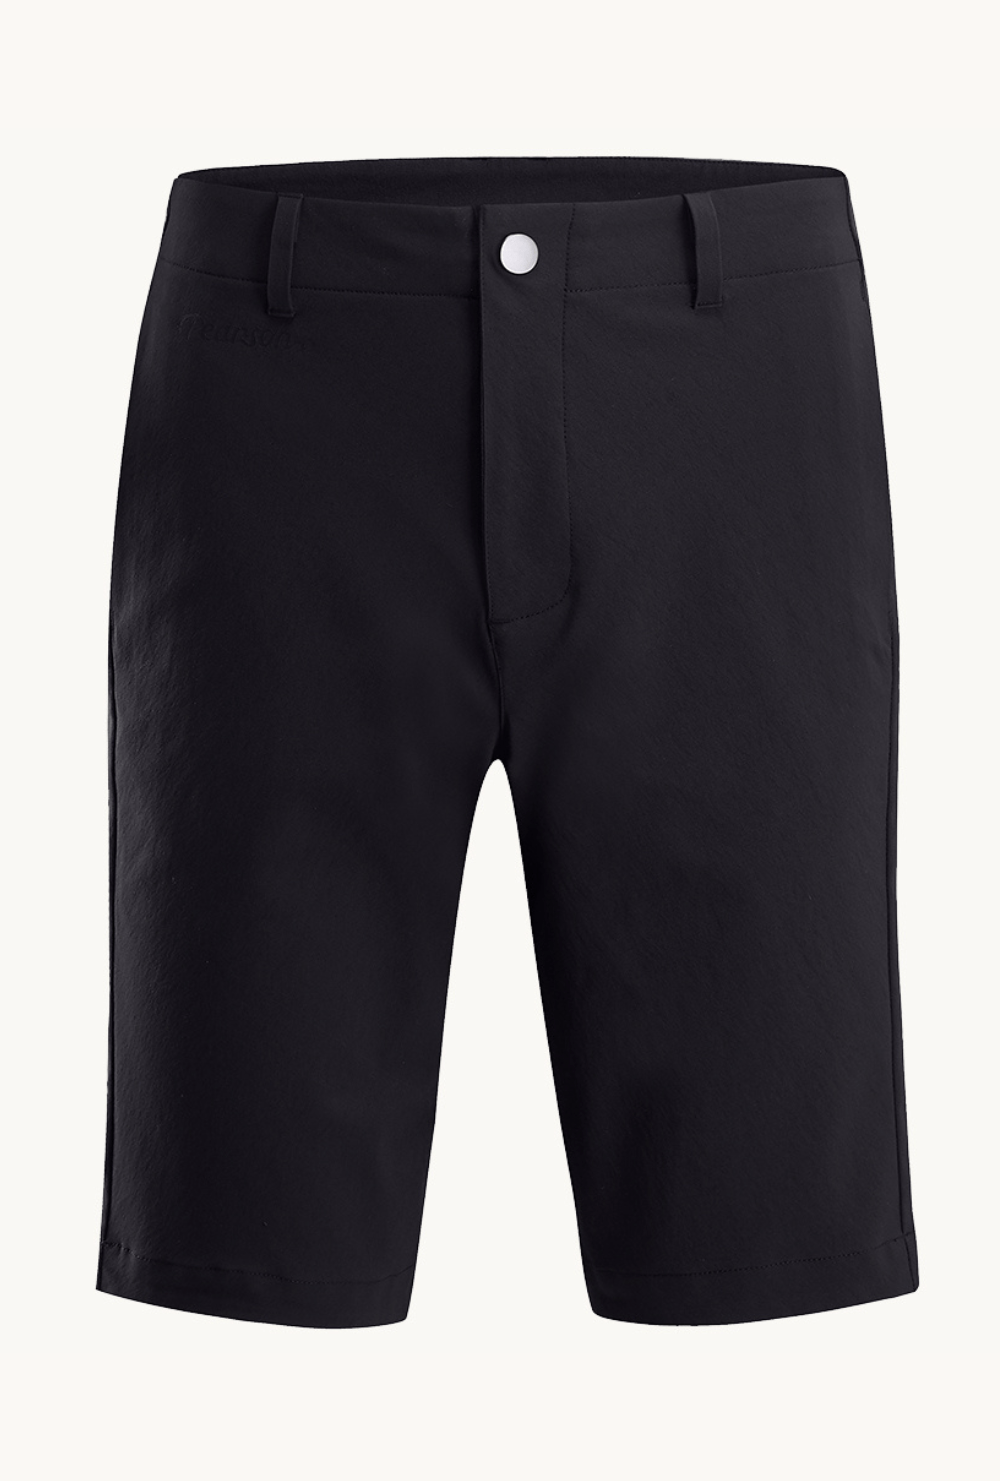 Pearson 1860  Kick Back - Urban Commuter Shorts Black  Large 34 / Black